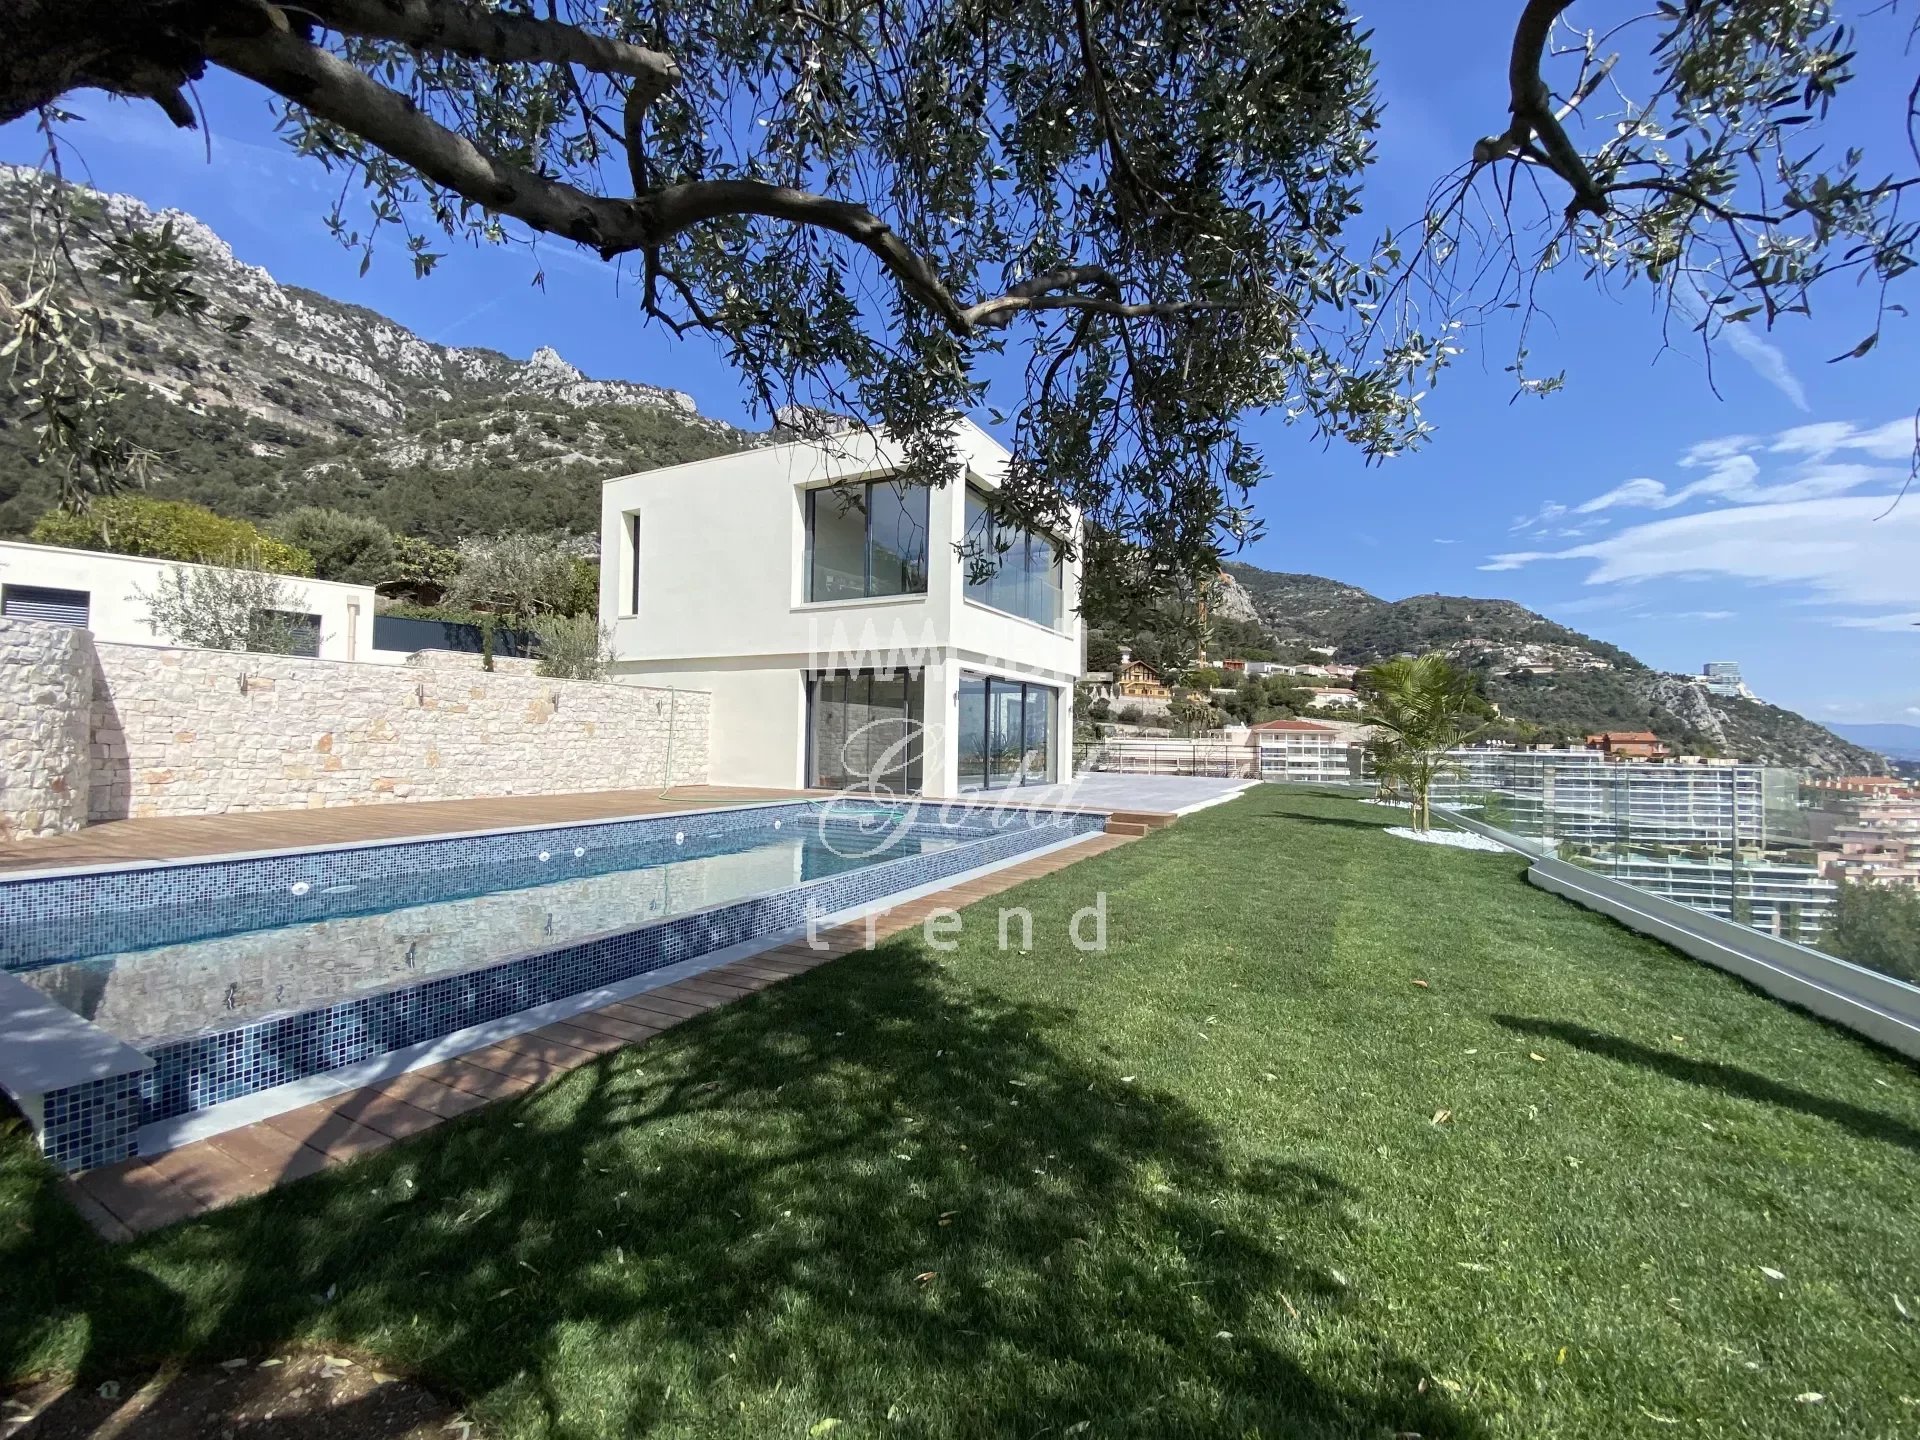 Immobilier Beausoleil - A vendre, splendide villa avec piscine et vue mer panoramique, limitrophe à Monaco